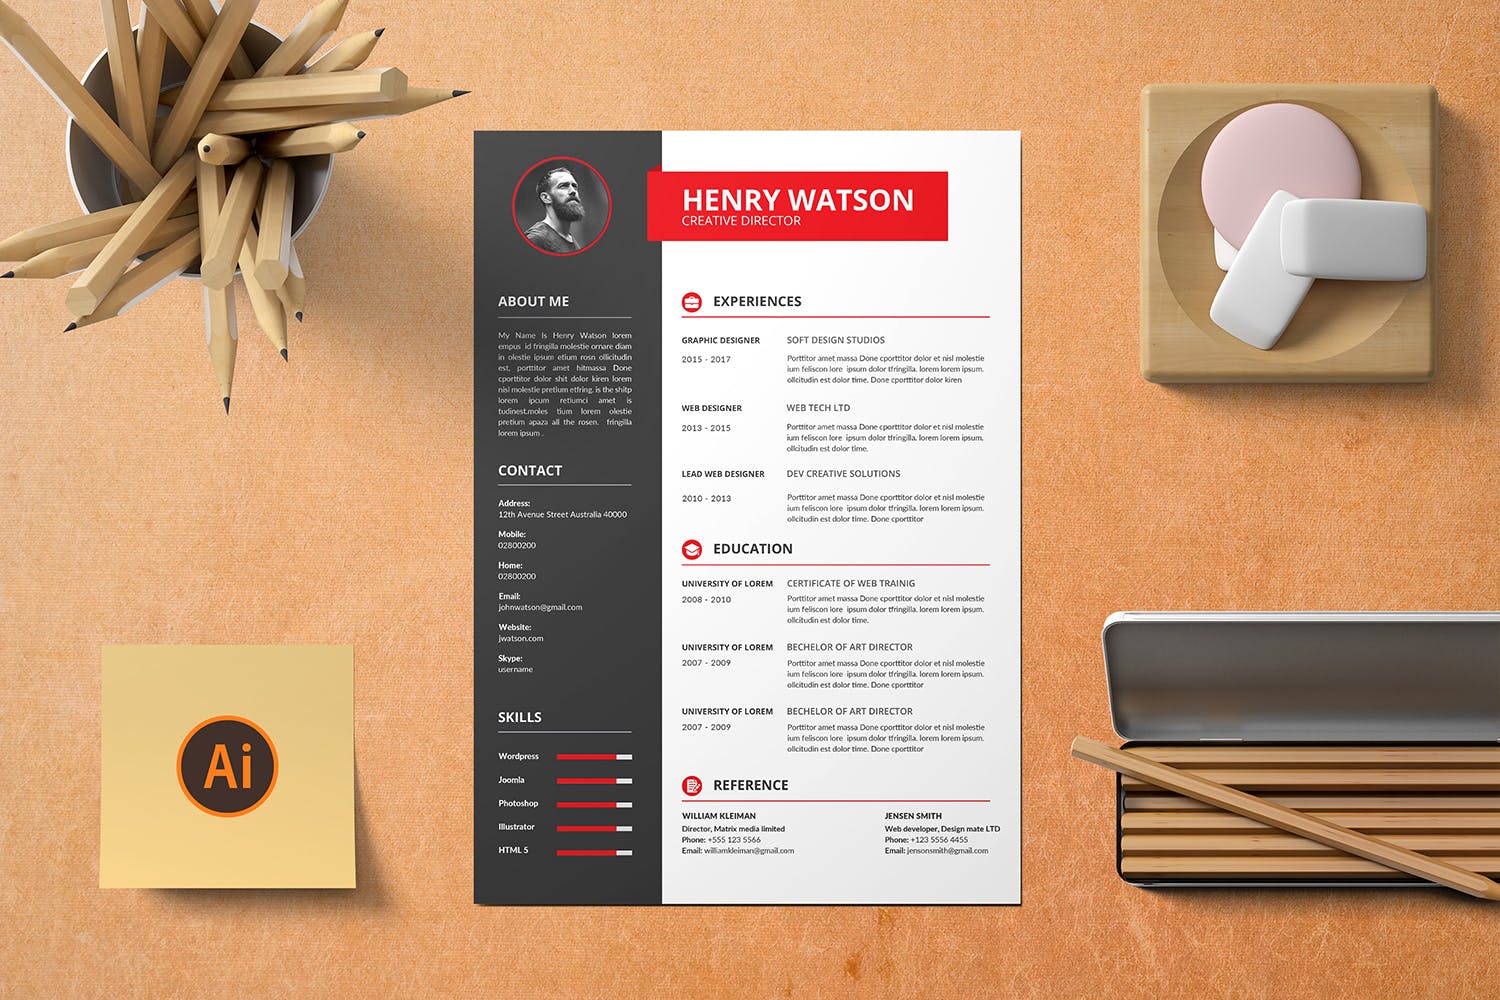 两列式排版风格个人简历&介绍信设计模板 CV Resume插图